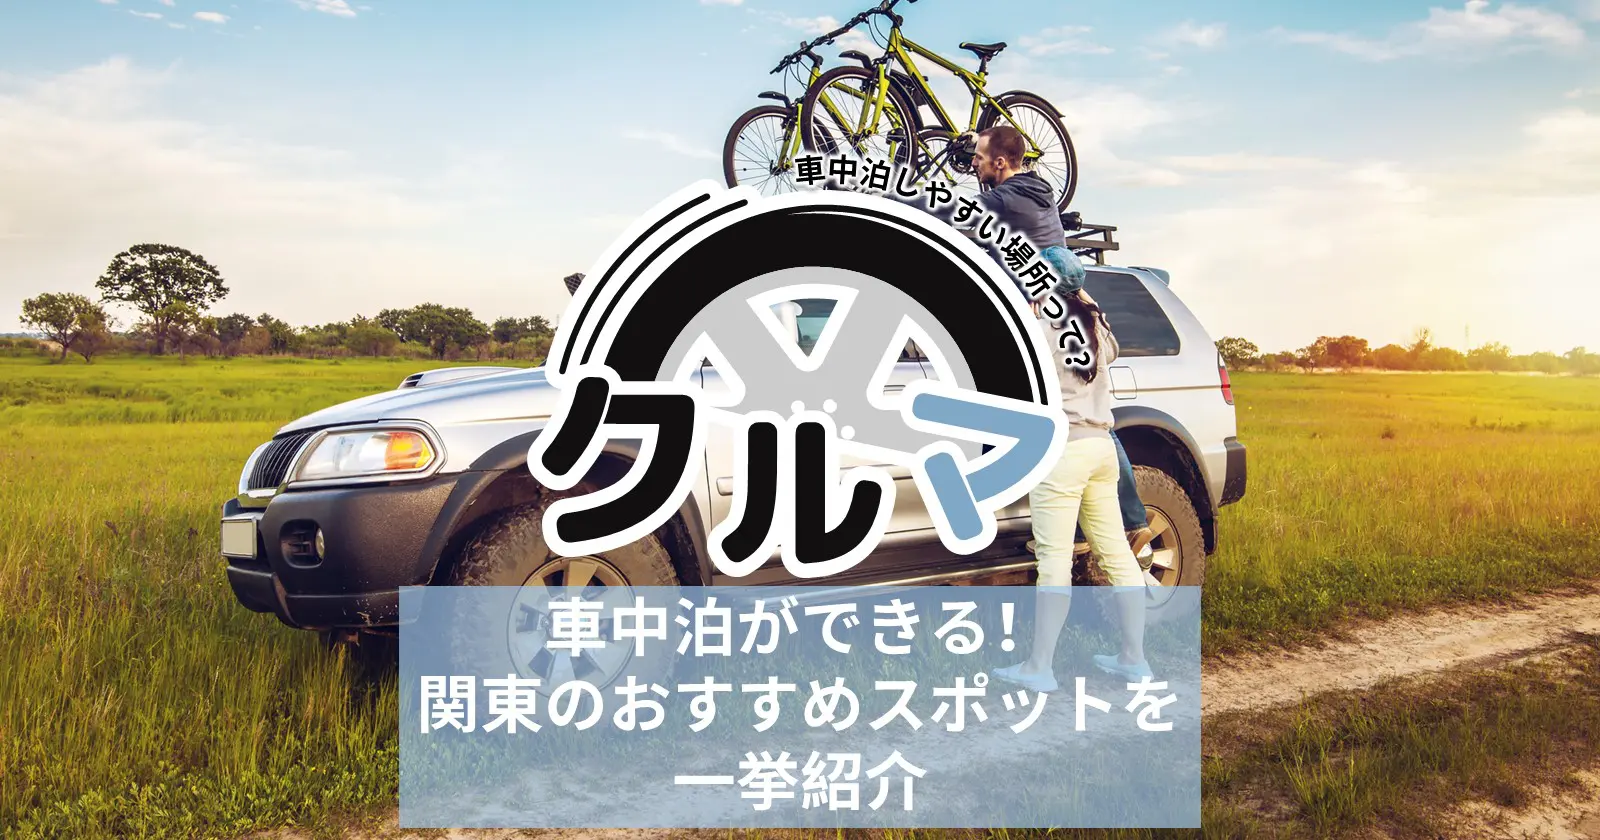 車中泊ができる 関東のおすすめスポットを一挙紹介 Takibi タキビ キャンプ アウトドアの総合情報サイト